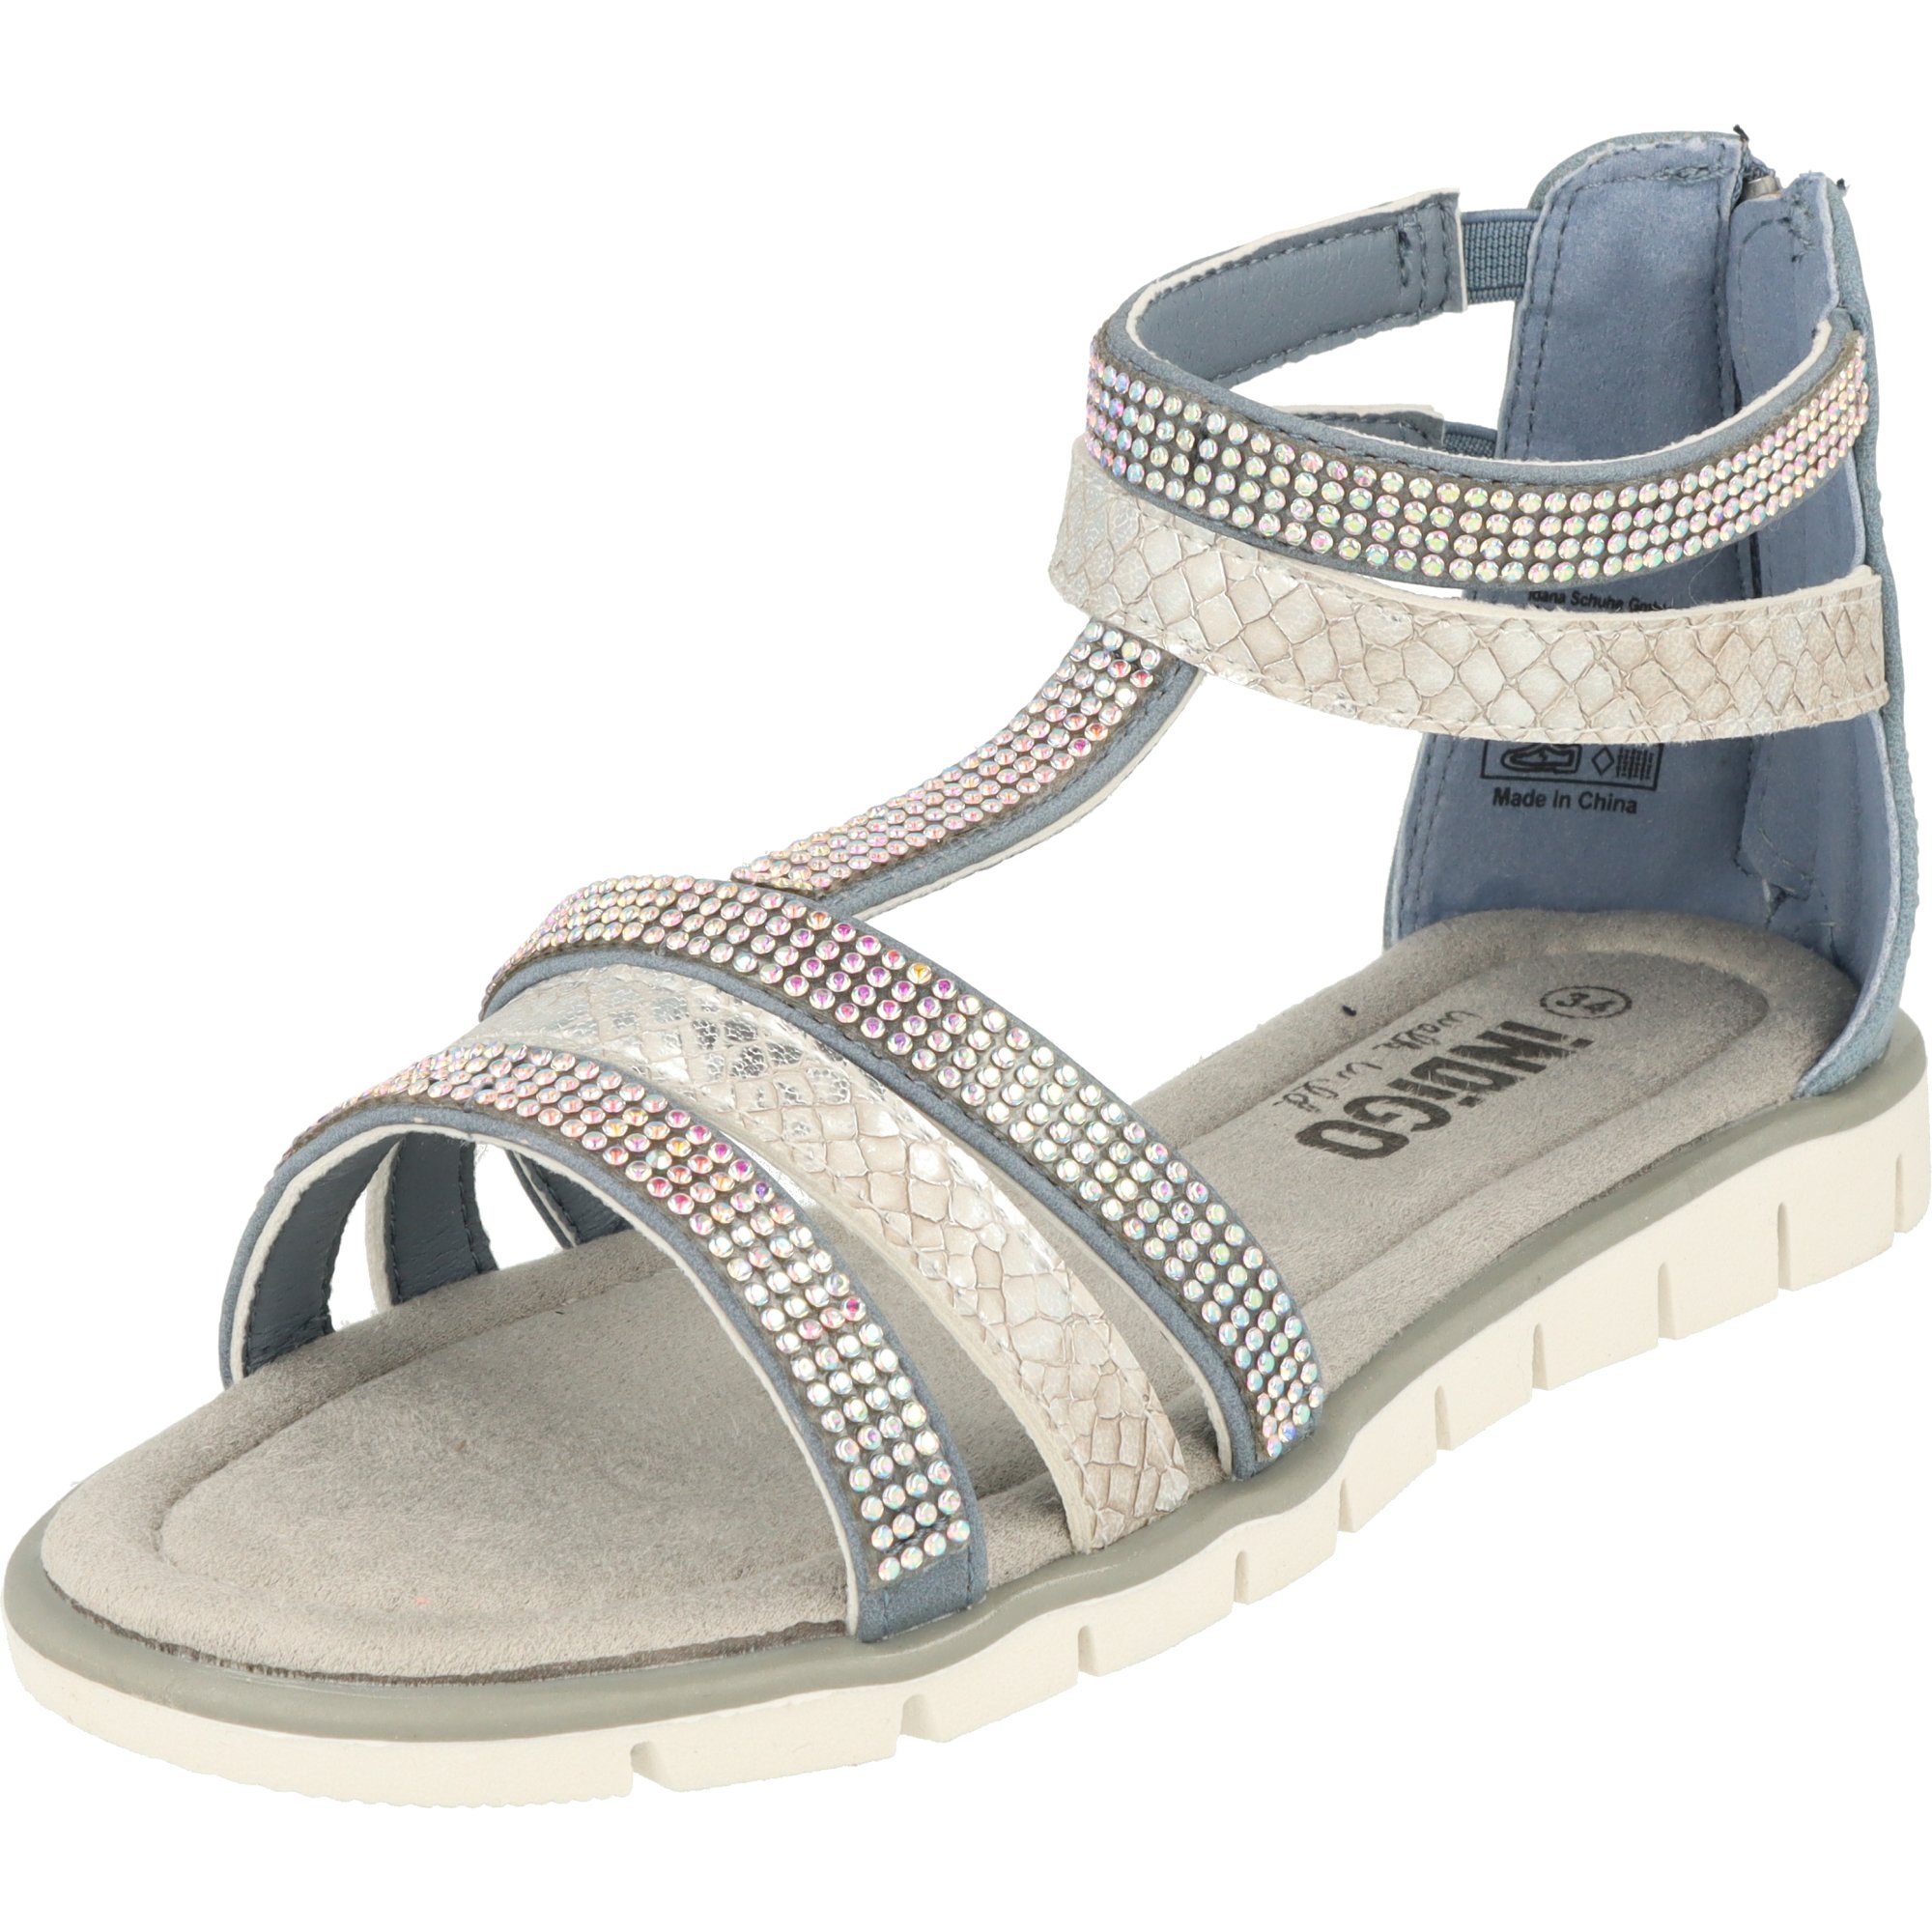 Römersandale Indigo mit 482-380 Glitzersteinen Sandale Schuhe Blue Mädchen Sommer